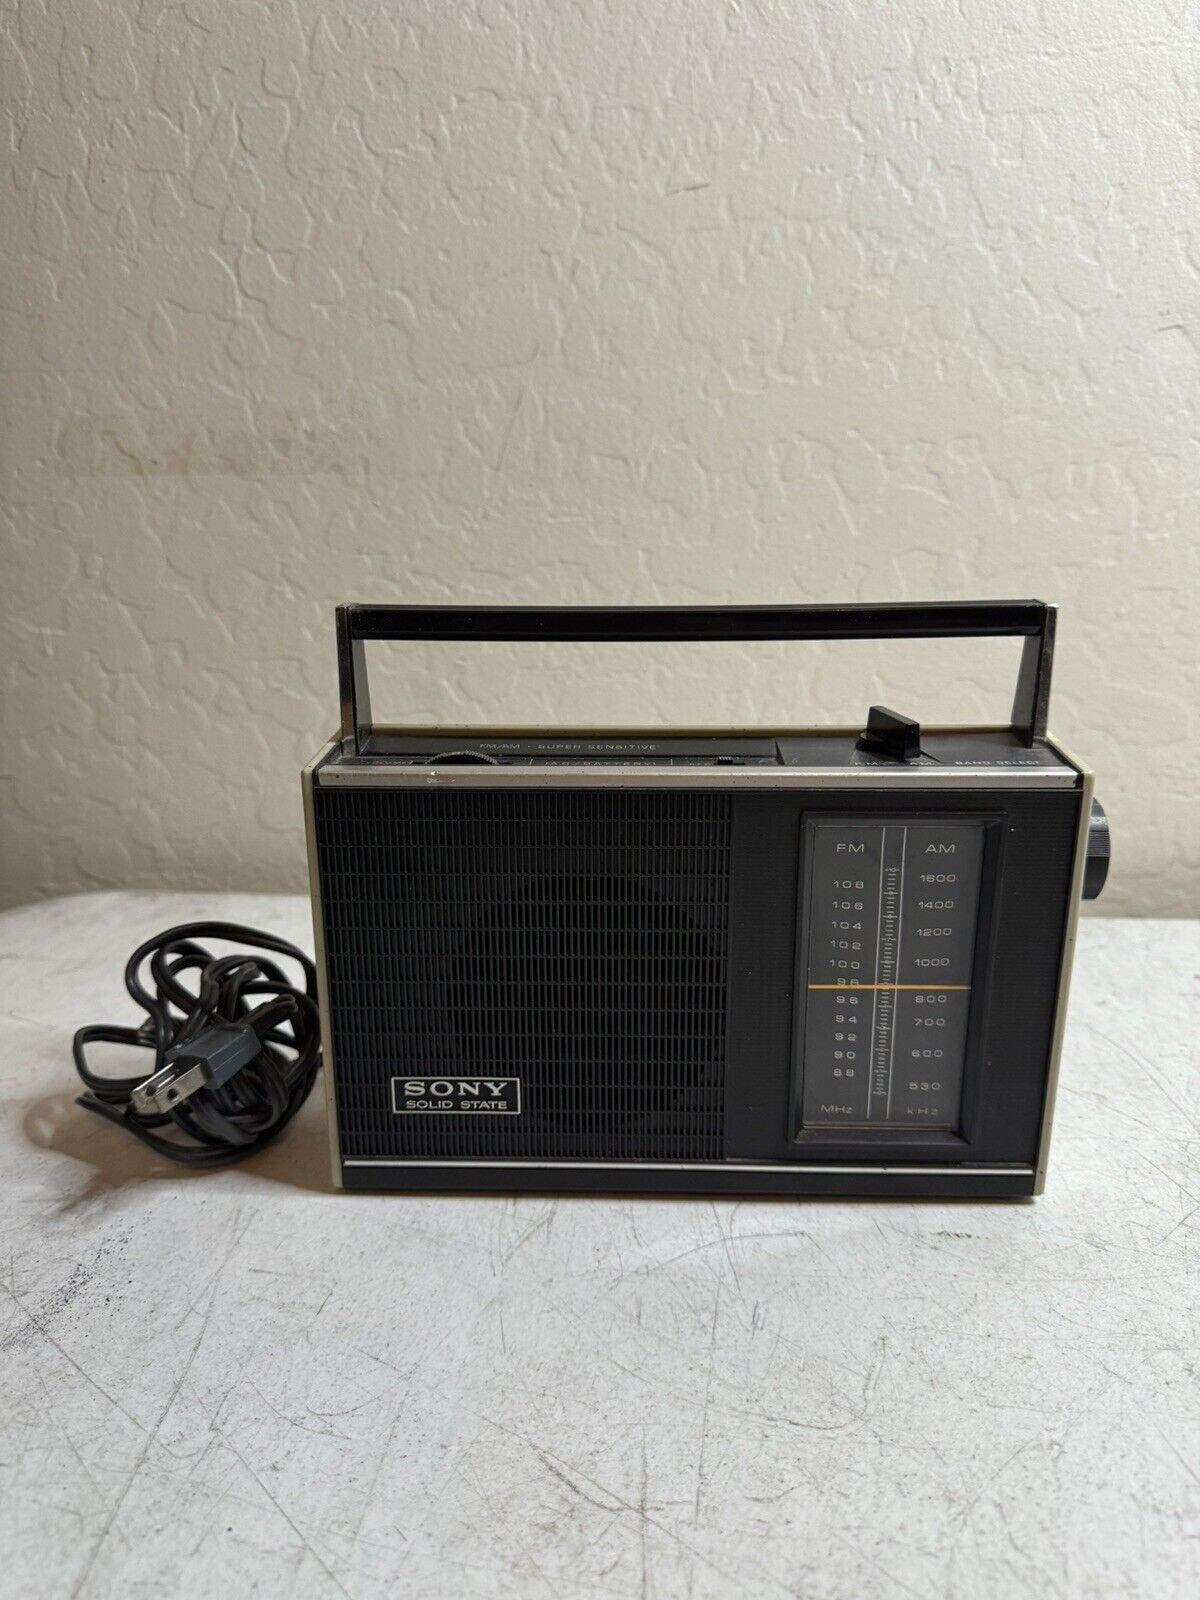 SONY TFM-7100W  Vintage FM/AM Transistor Radio Made In Japan